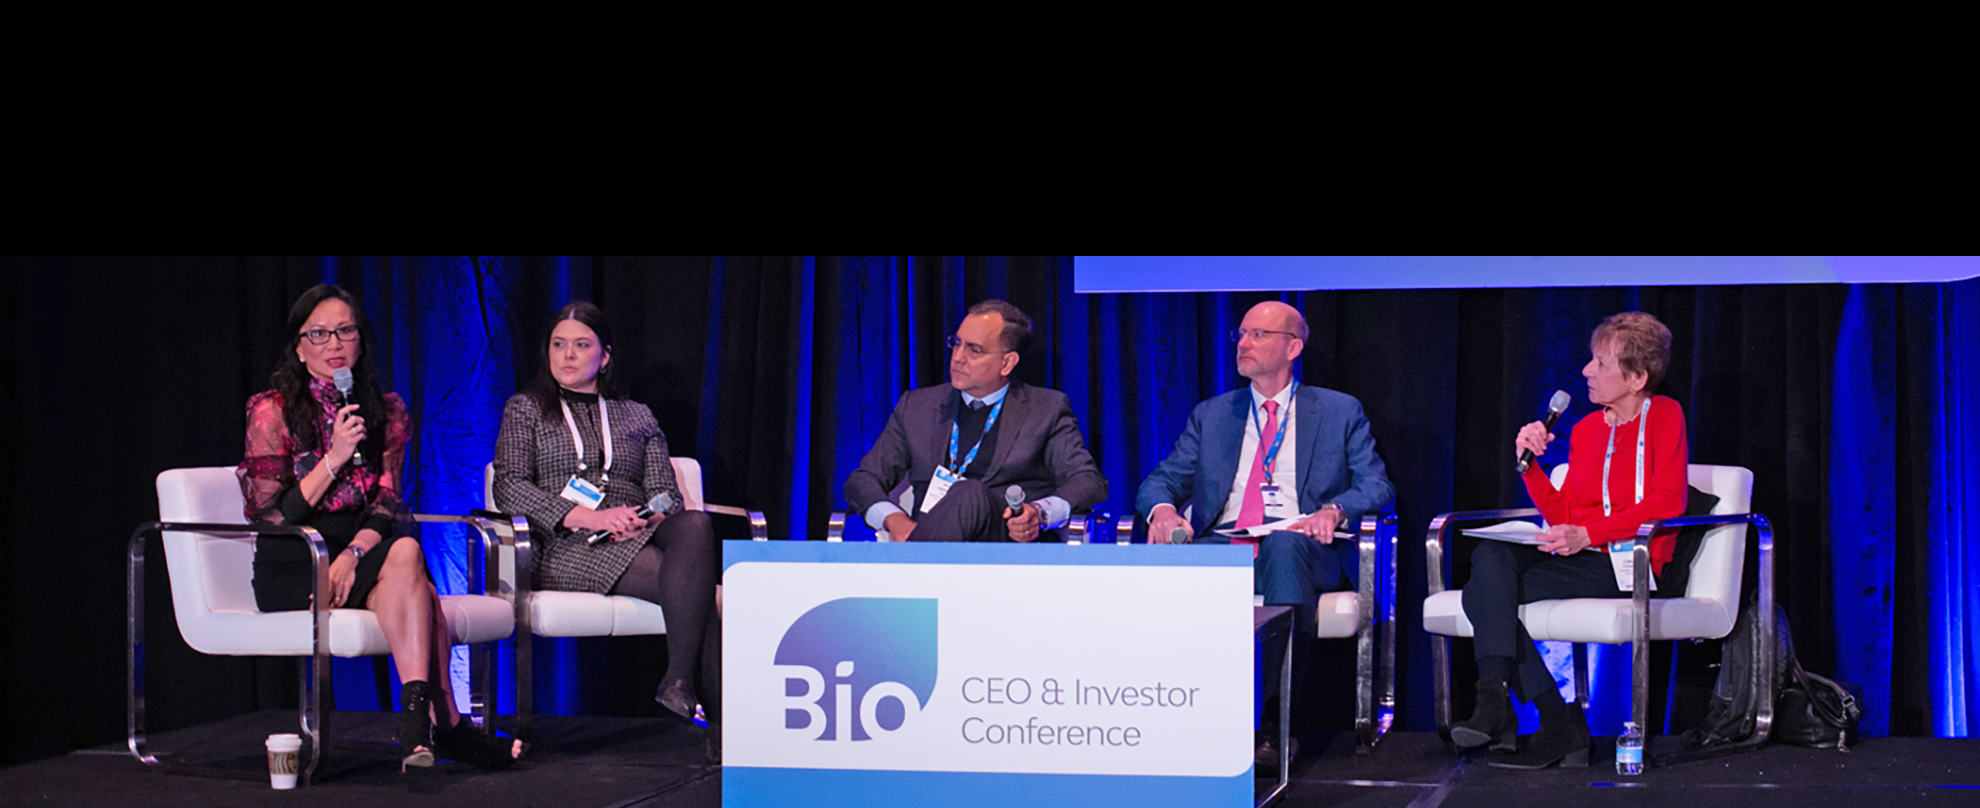 BIO CEO & Investor Conference